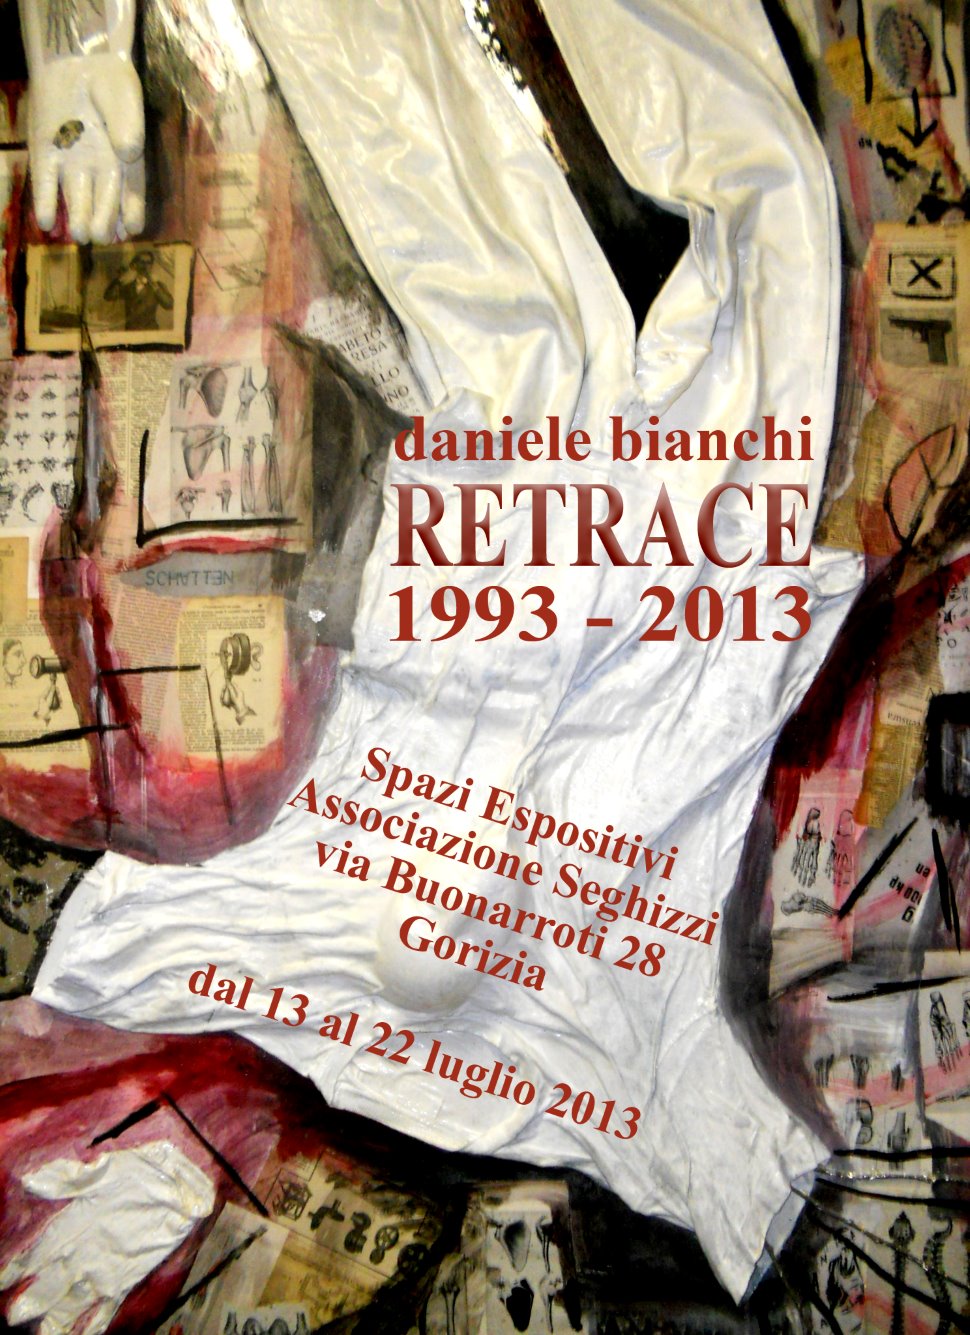 Daniele Bianchi, RETRACE (retrospettiva 1993-2013)